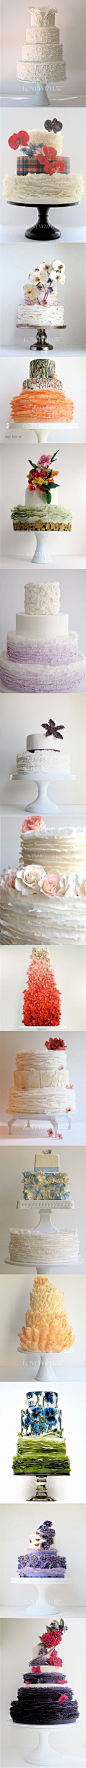 #婚礼布置#Austin的层层叠叠花边翻糖蛋糕，用唯美褶皱演绎浪漫婚礼！ 更多: http://www.lovewith.me/share/detail/all/30037